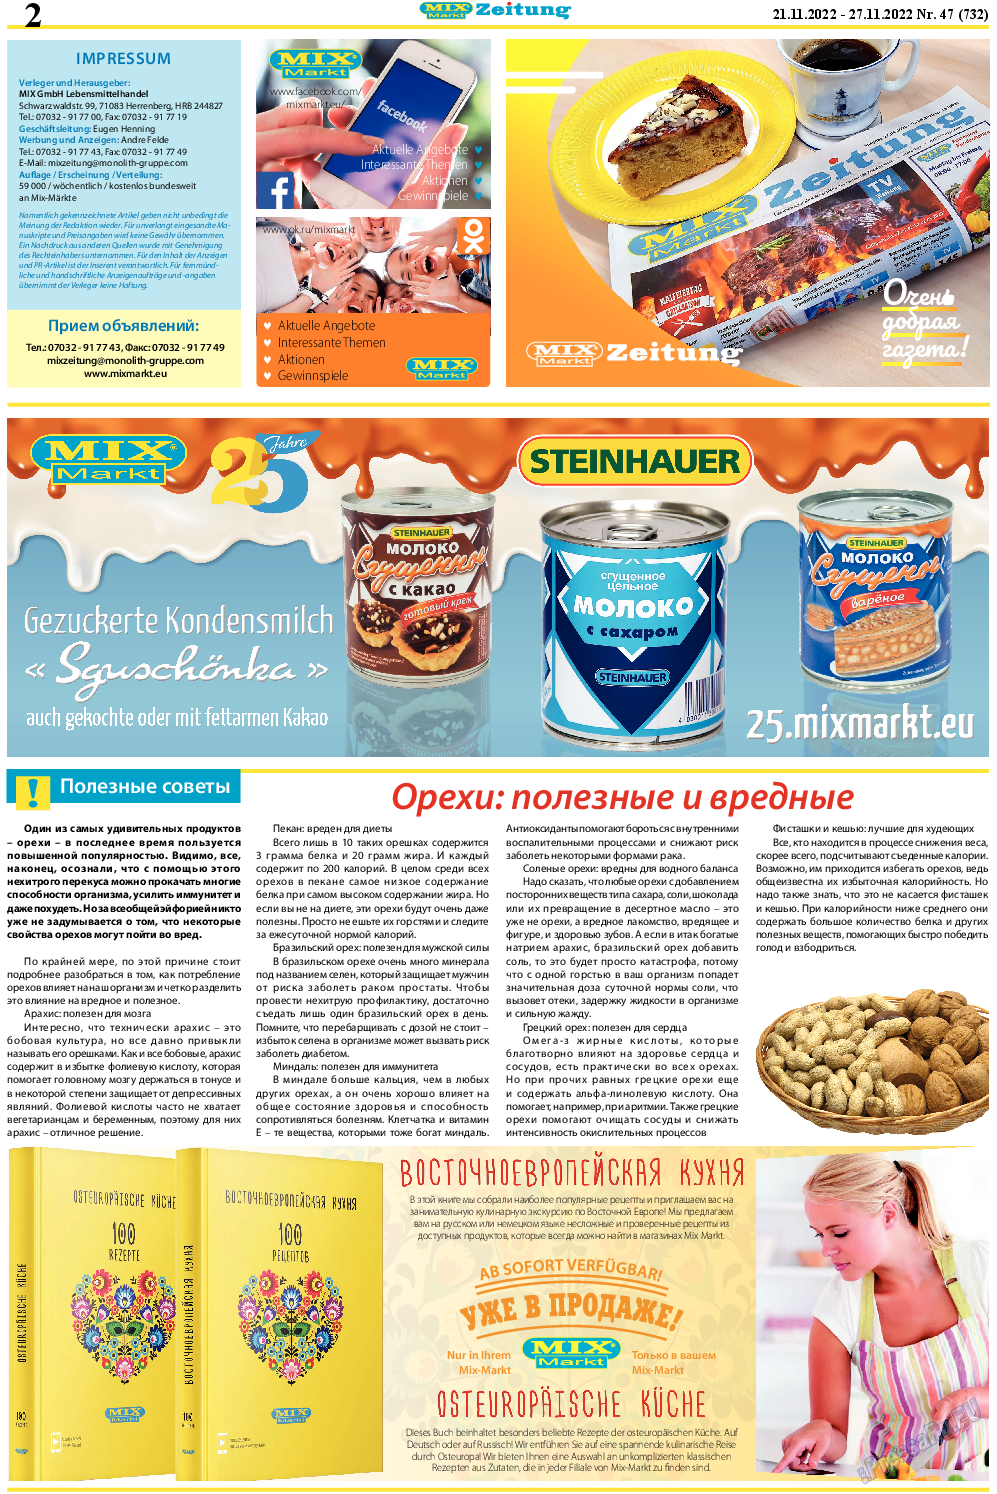 MIX-Markt Zeitung, газета. 2022 №47 стр.2